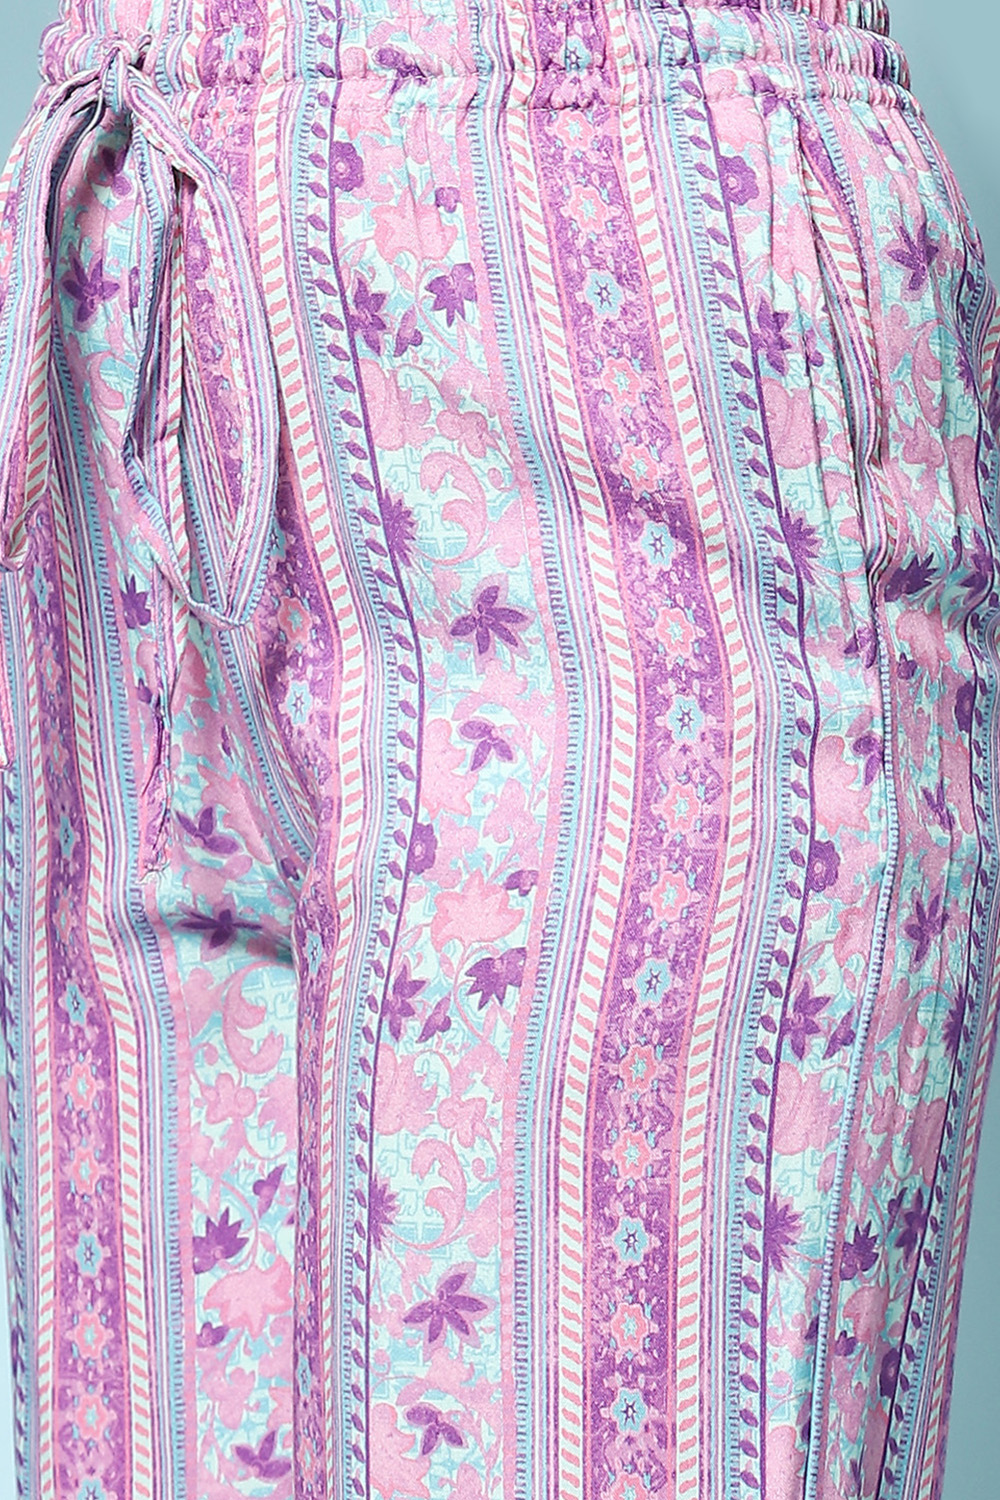 Purple Rayon Printed Sleepwear image number 2